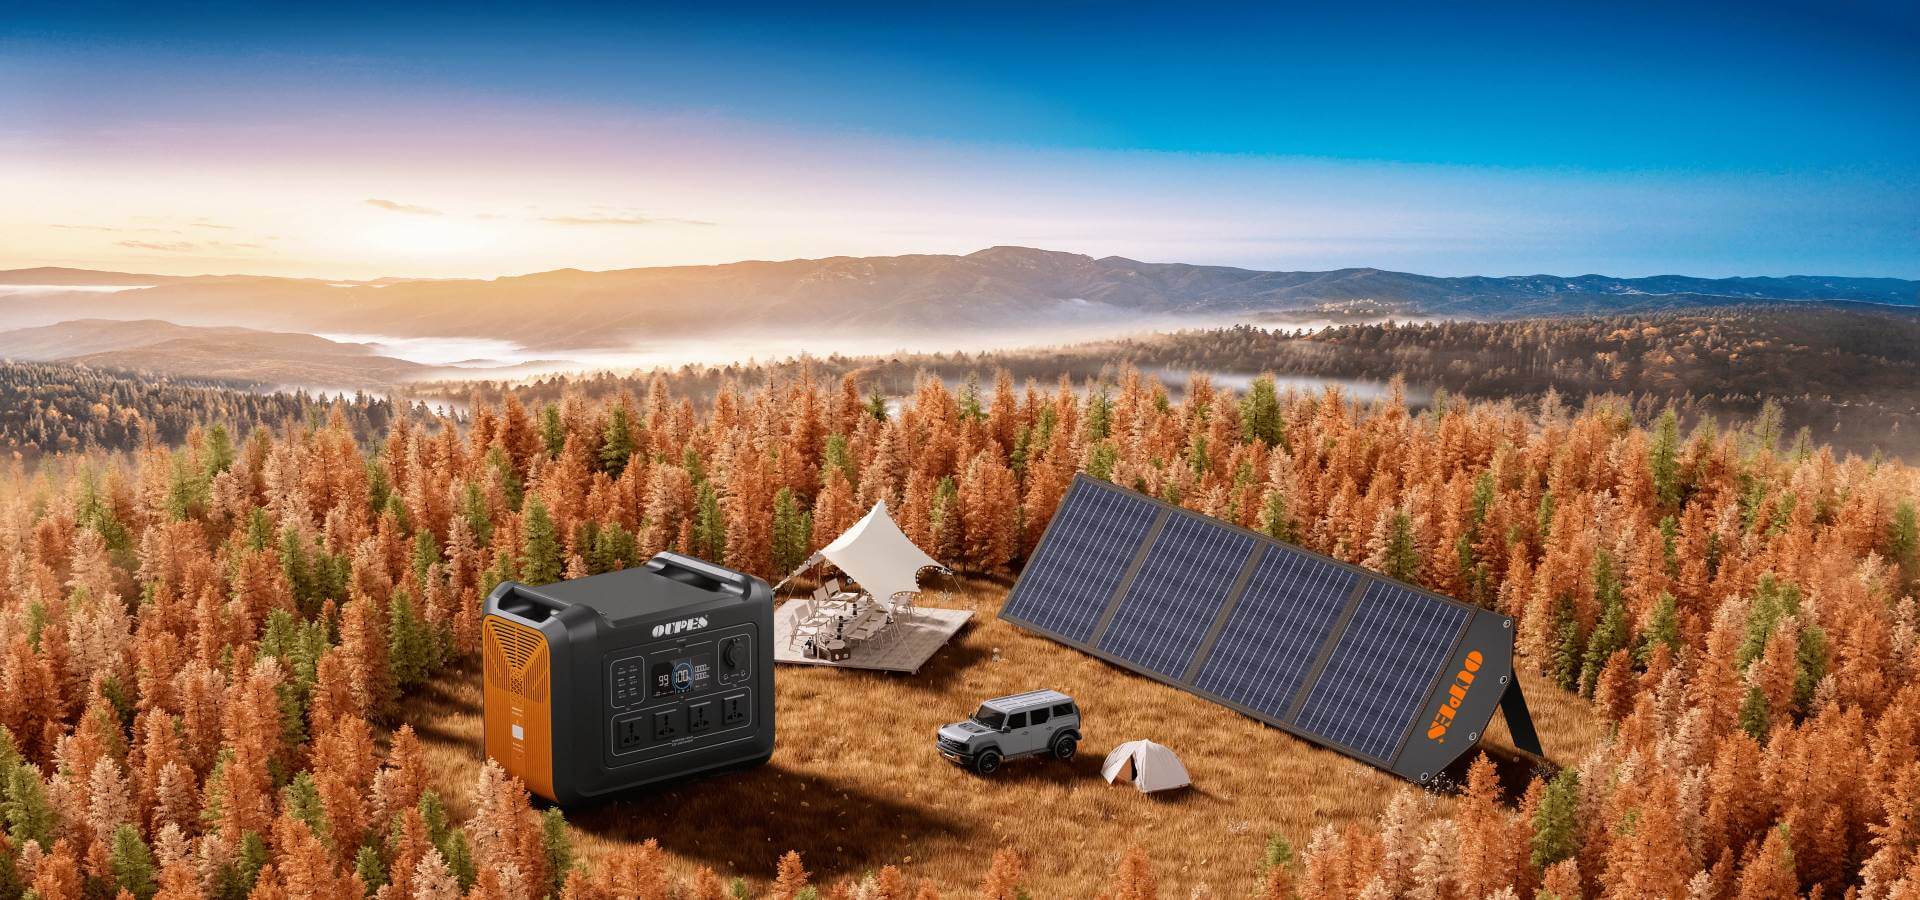 OUPES 2400 W 2232 Wh Tragbares Kraftwerk + 4 Stück 240 W Faltbare  Solarmodule Outdoor Netzteil Set – US Stecker Von 2.581,57 €